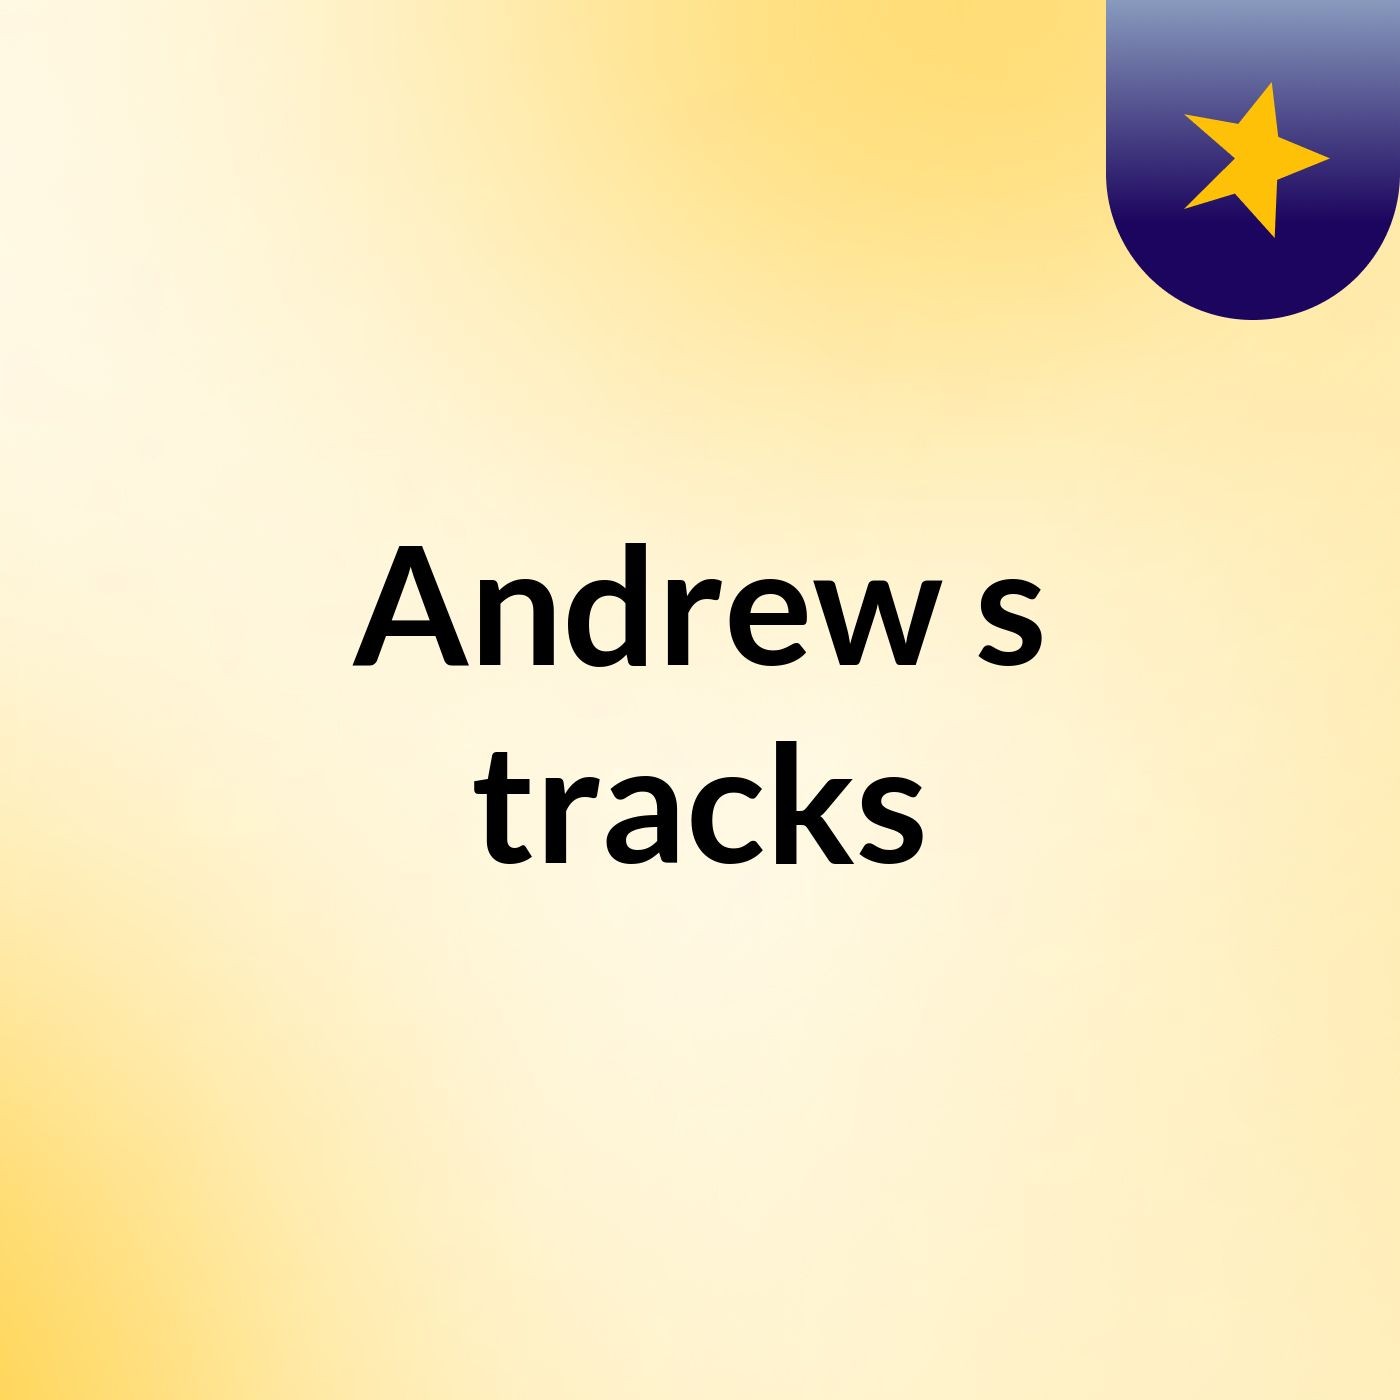 Andrew's tracks